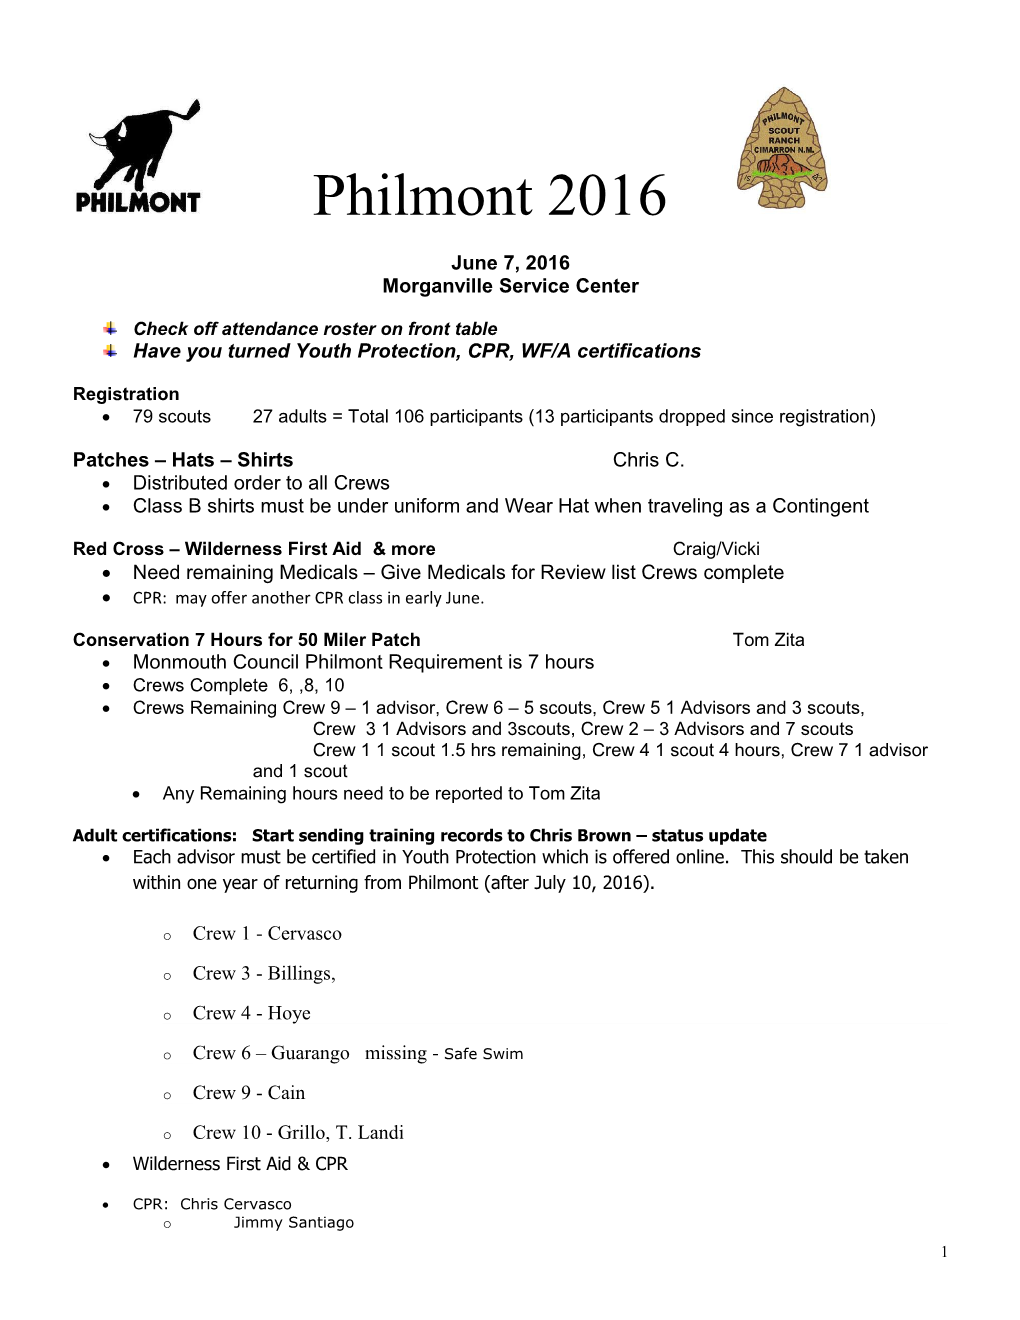 Philmont 2004 Contingent Committee